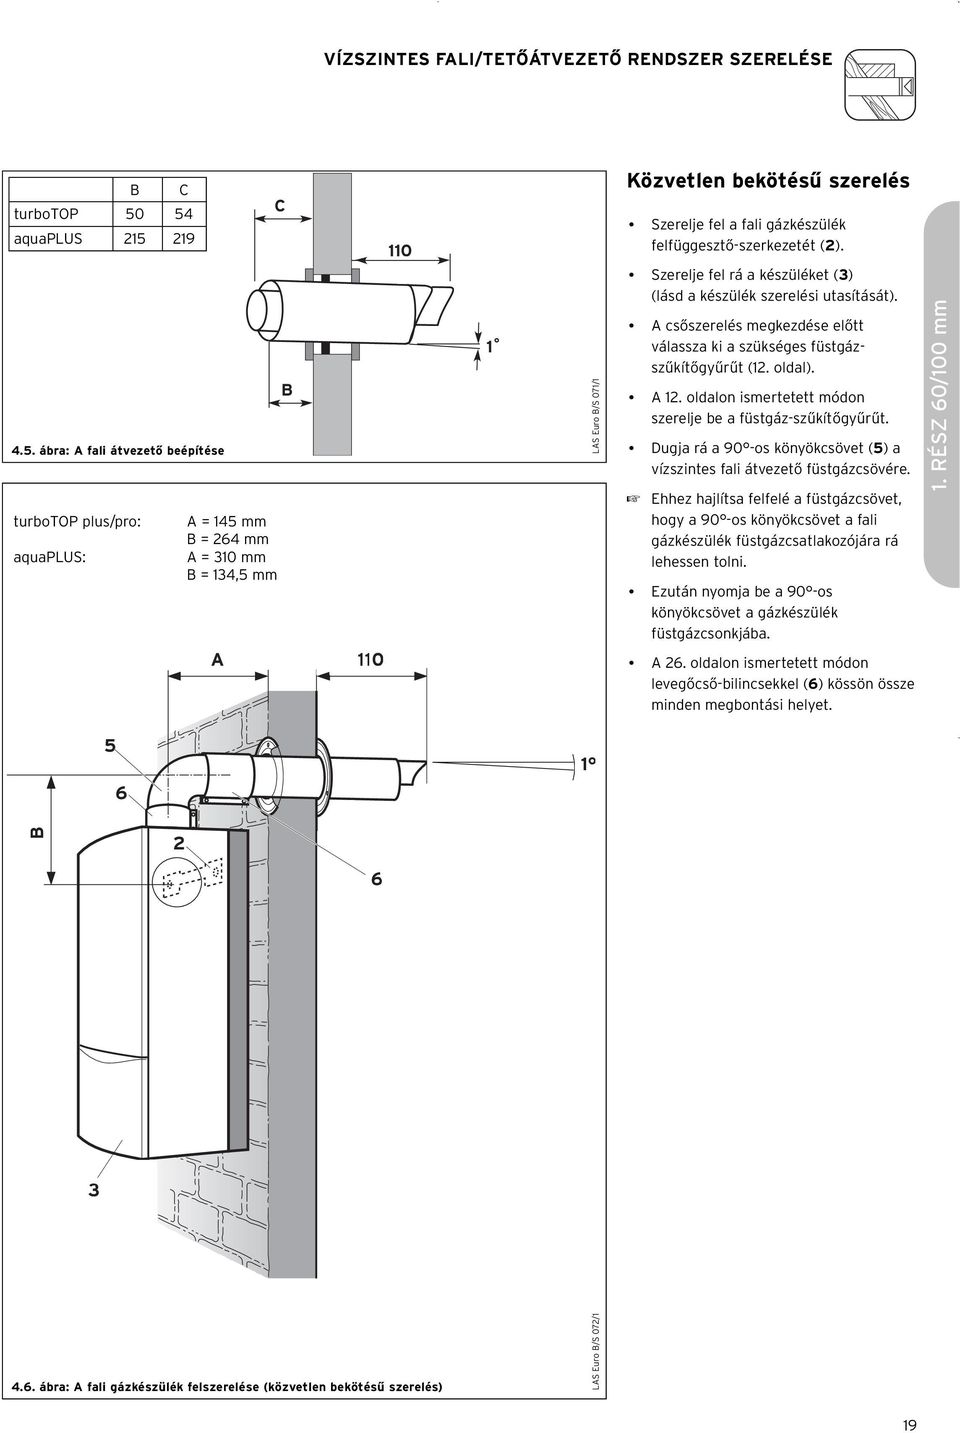 Szerelje fel a fali gázkészülék felfüggesztő-szerkezetét (2). Szerelje fel rá a készüléket (3) (lásd a készülék szerelési utasítását).